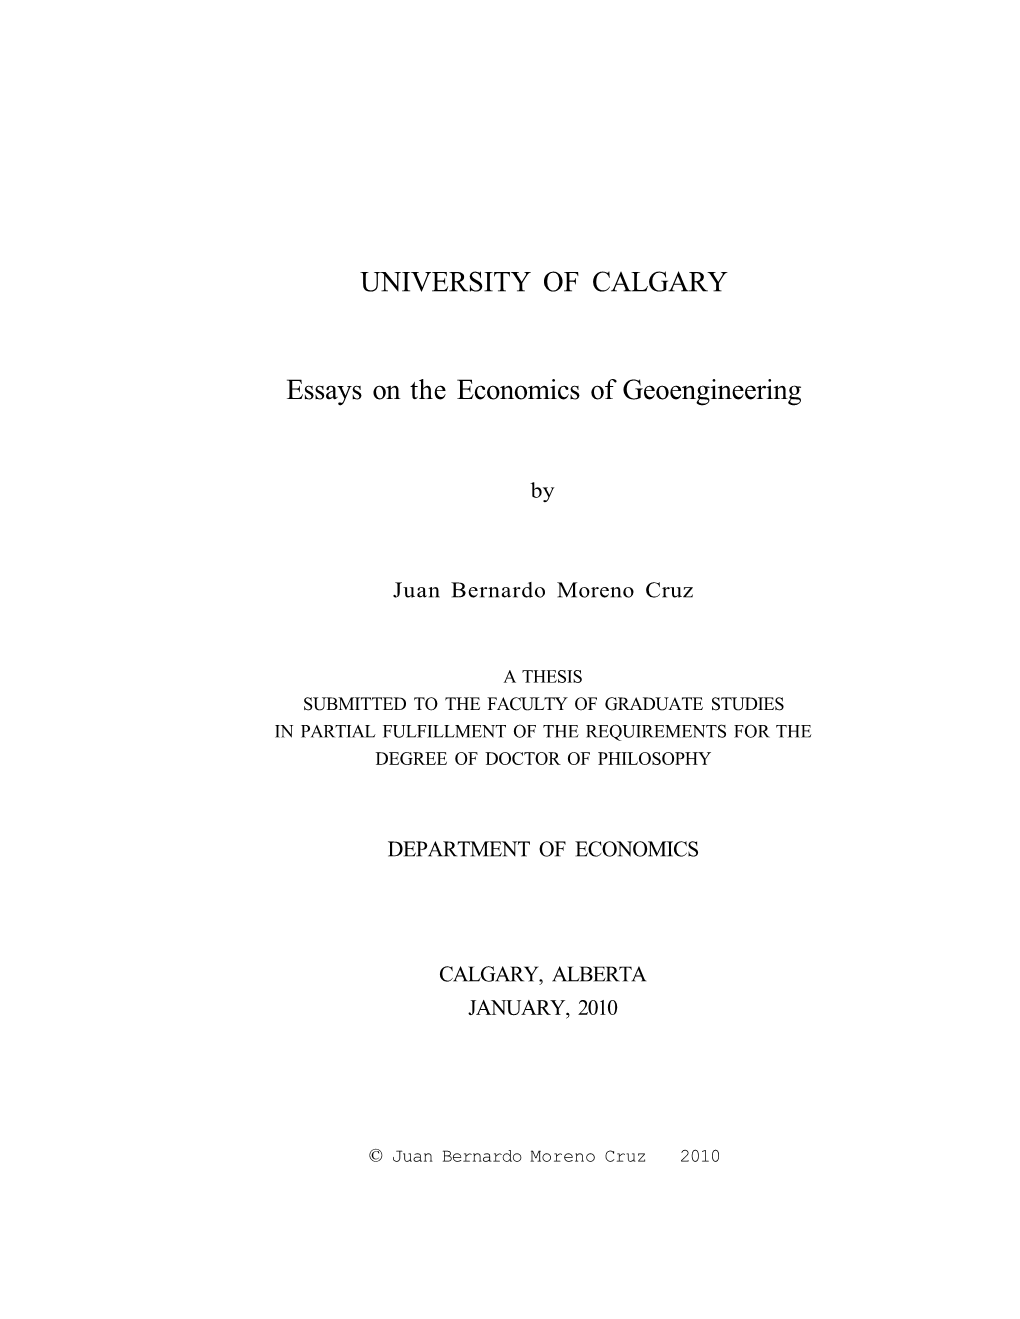 Essays on the Economics of Geoengineering